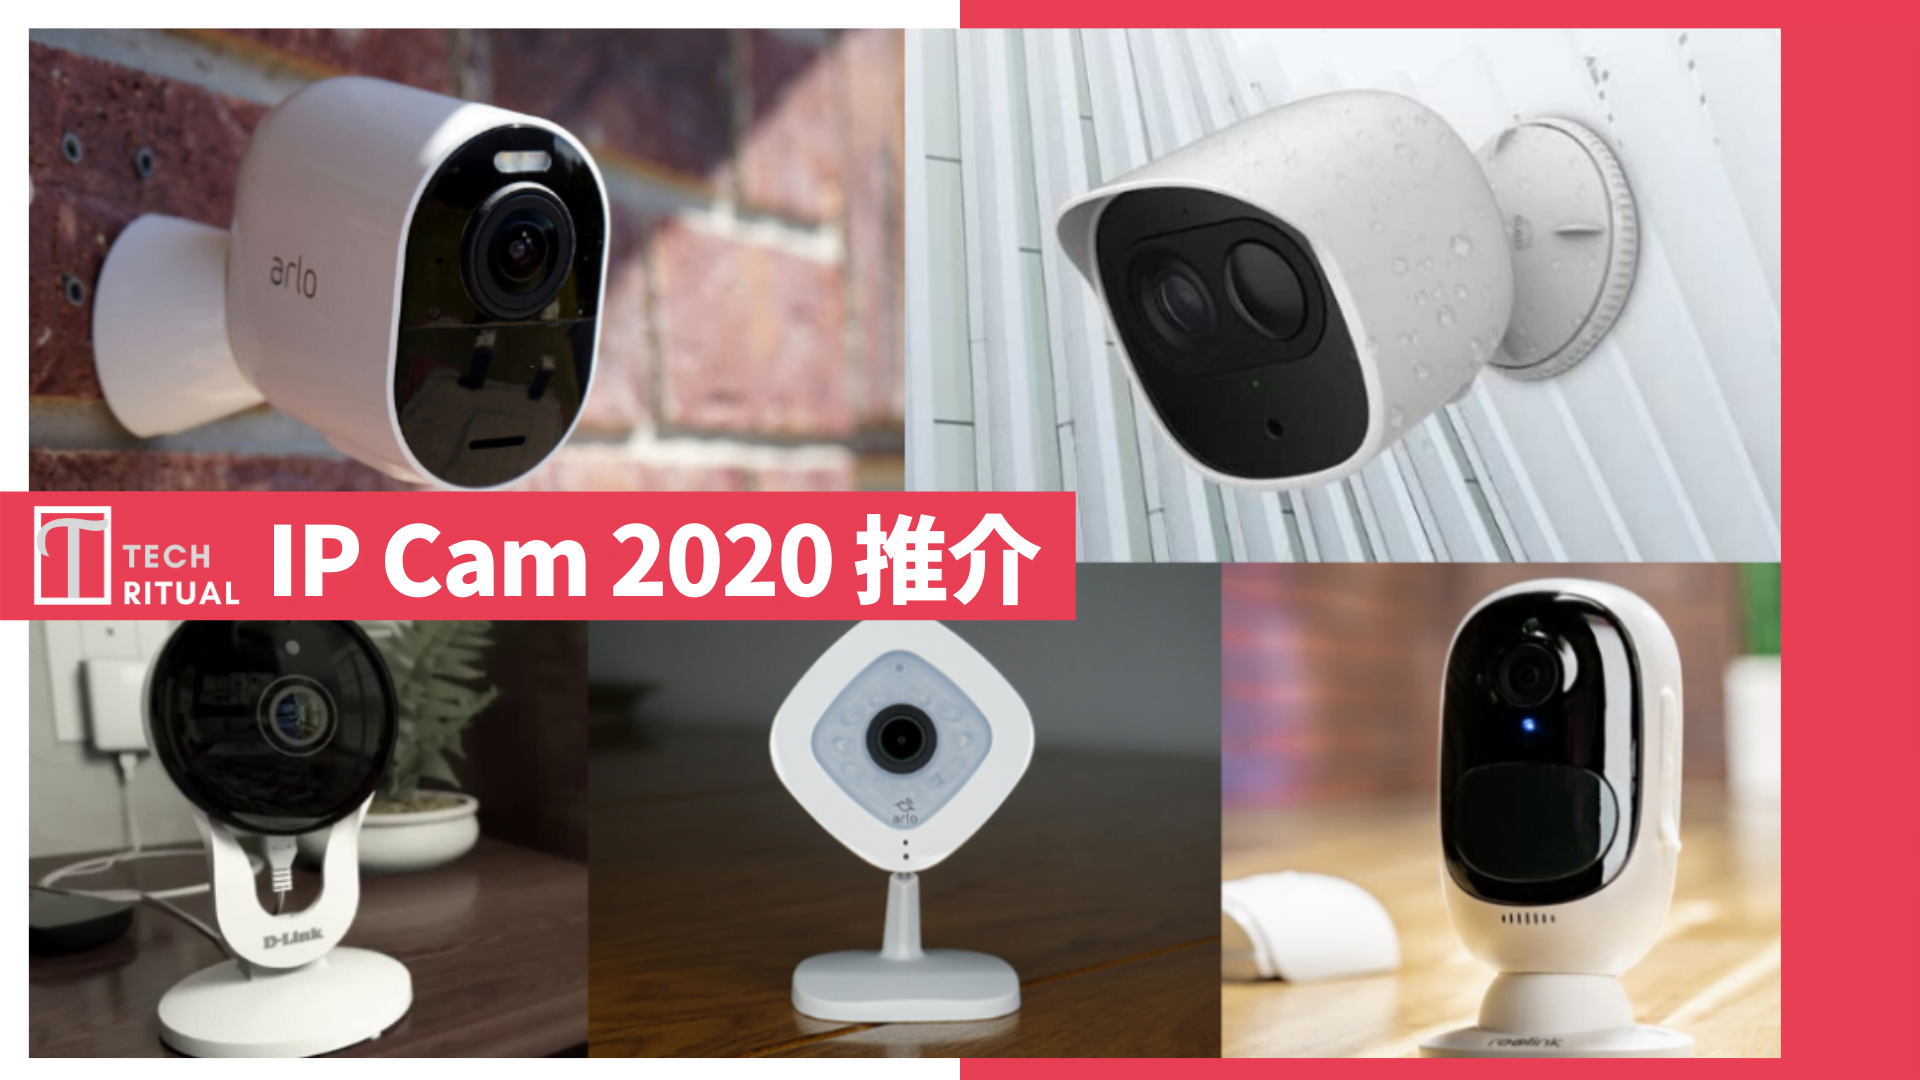 【攻略】IP Cam 2020 推介：有咩重點要注意？入門 / 家居 / 戶外選購指南？ | Techritual Hong Kong ...